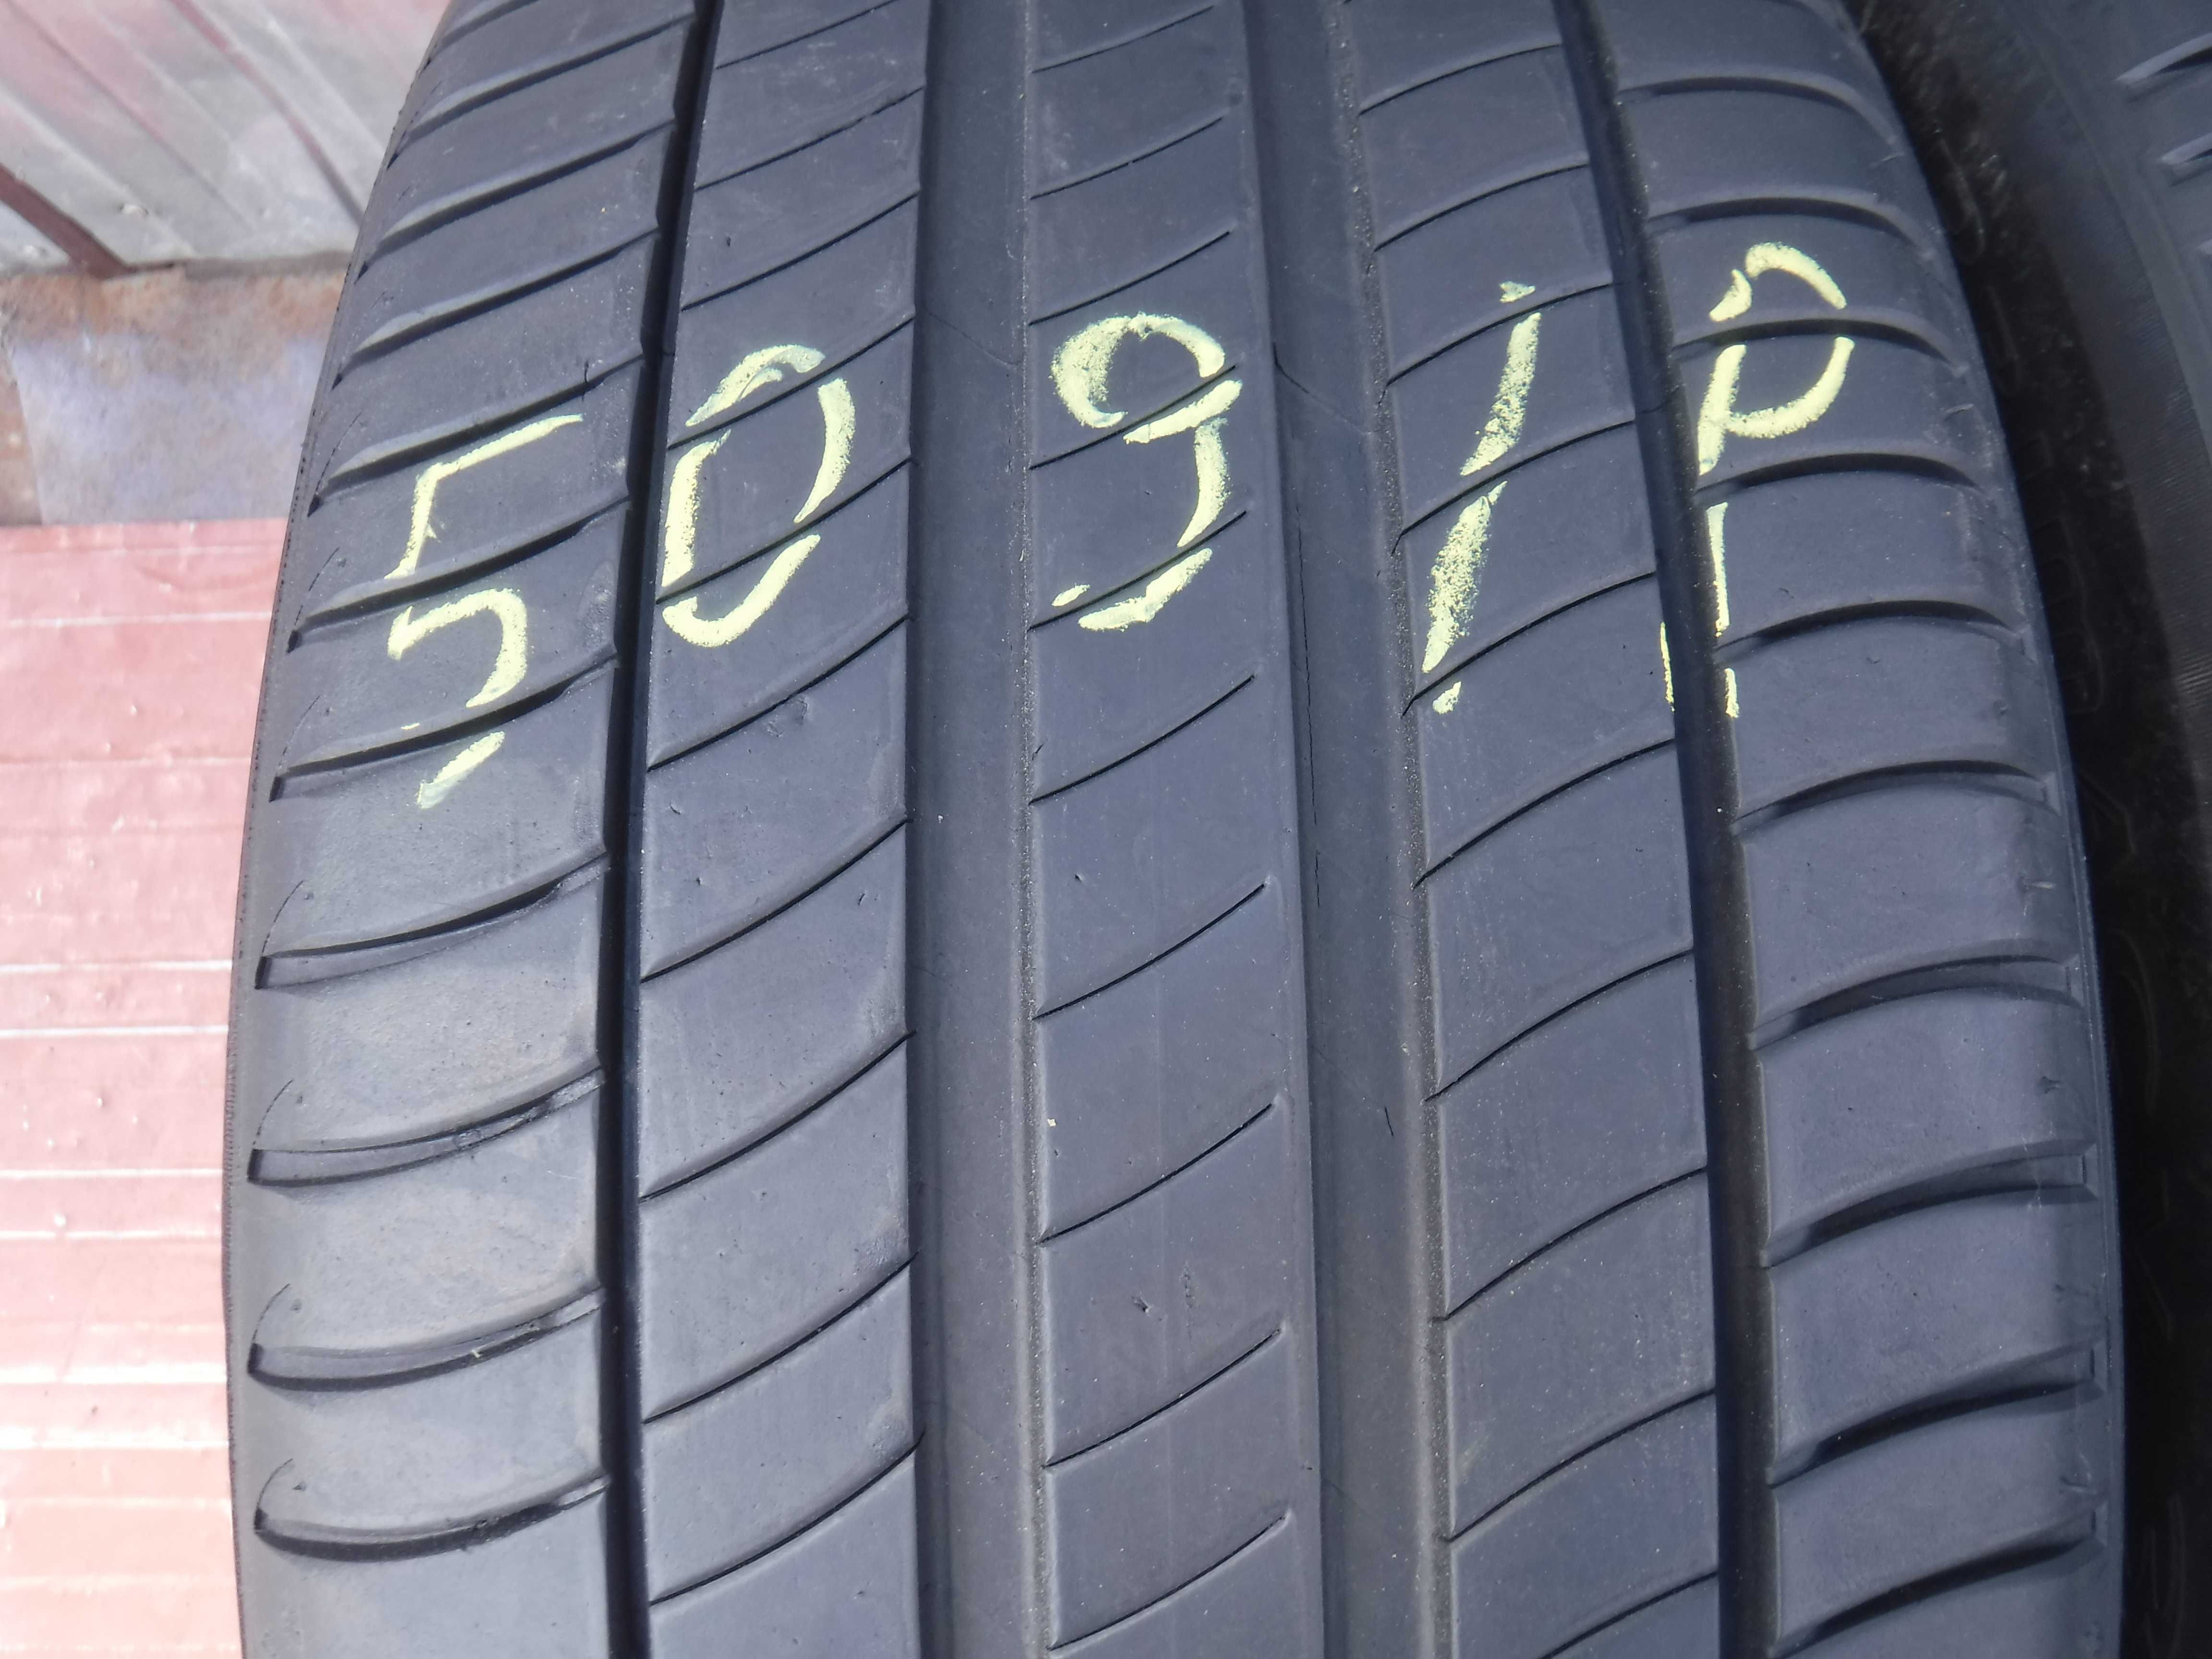 2x Opony letnie 235/50/R18 Lato Michelin Primacy 3